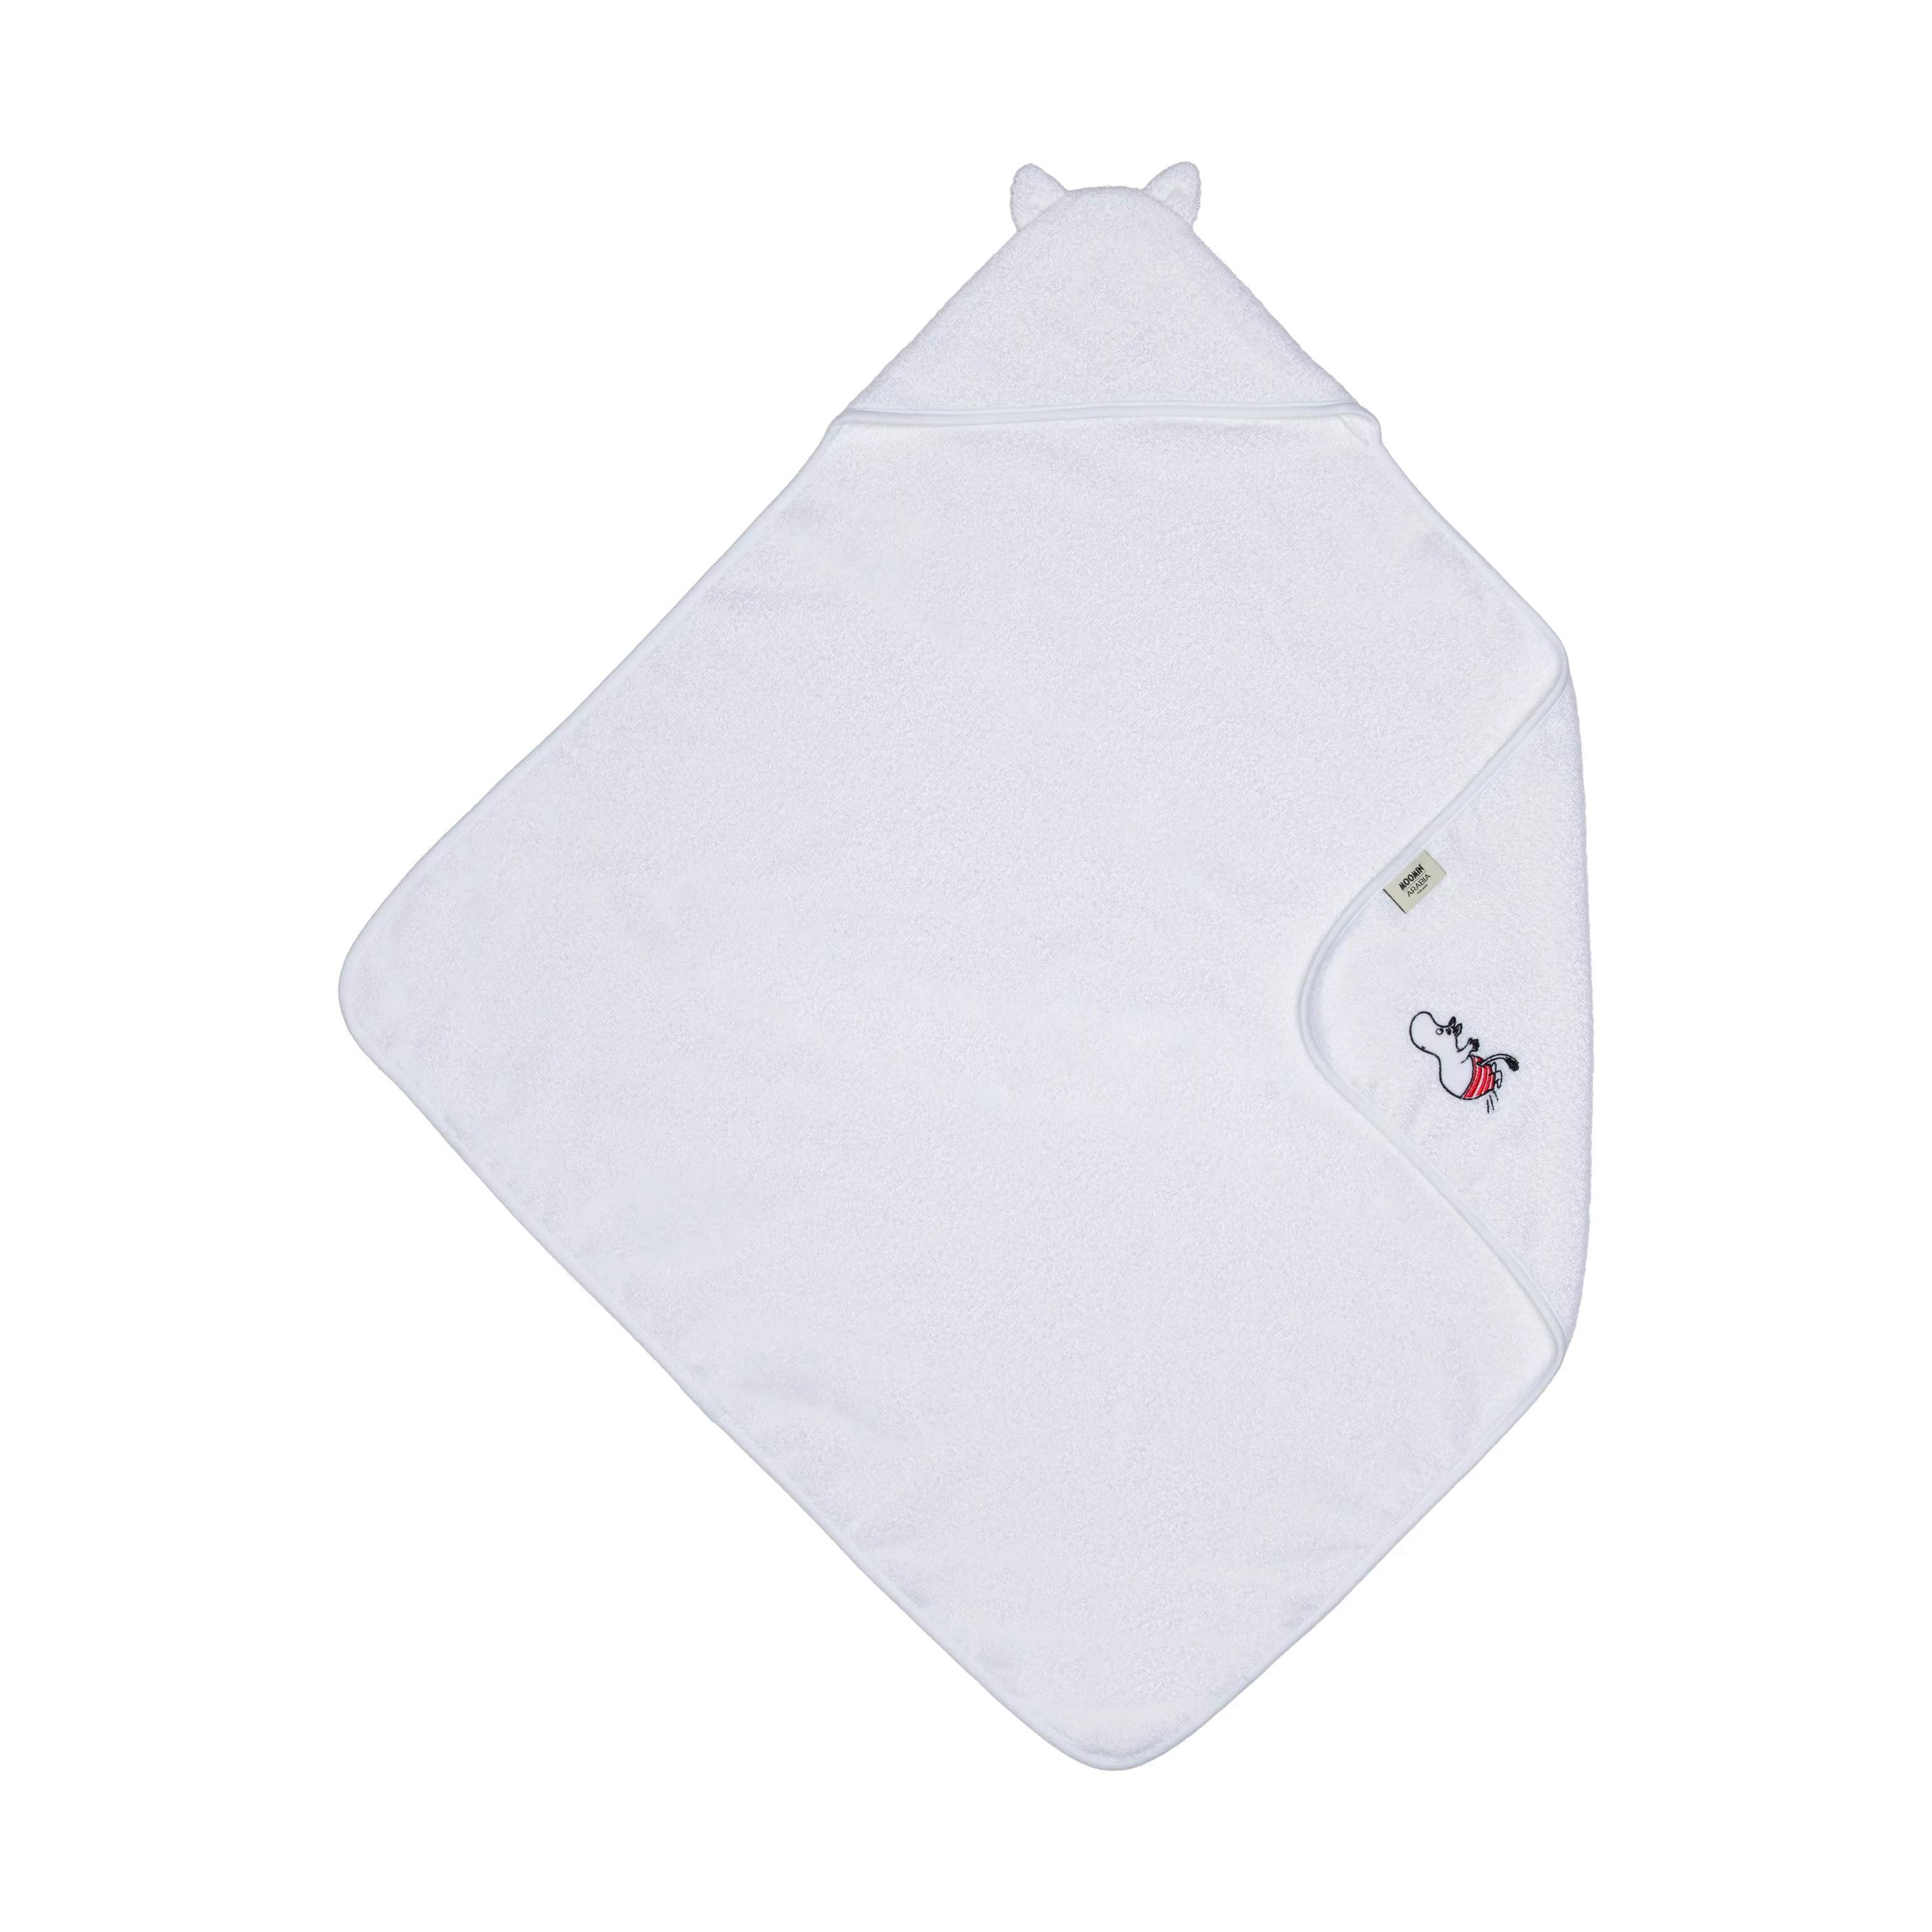 Hættehåndklæde - Mumitrold, hvid, large